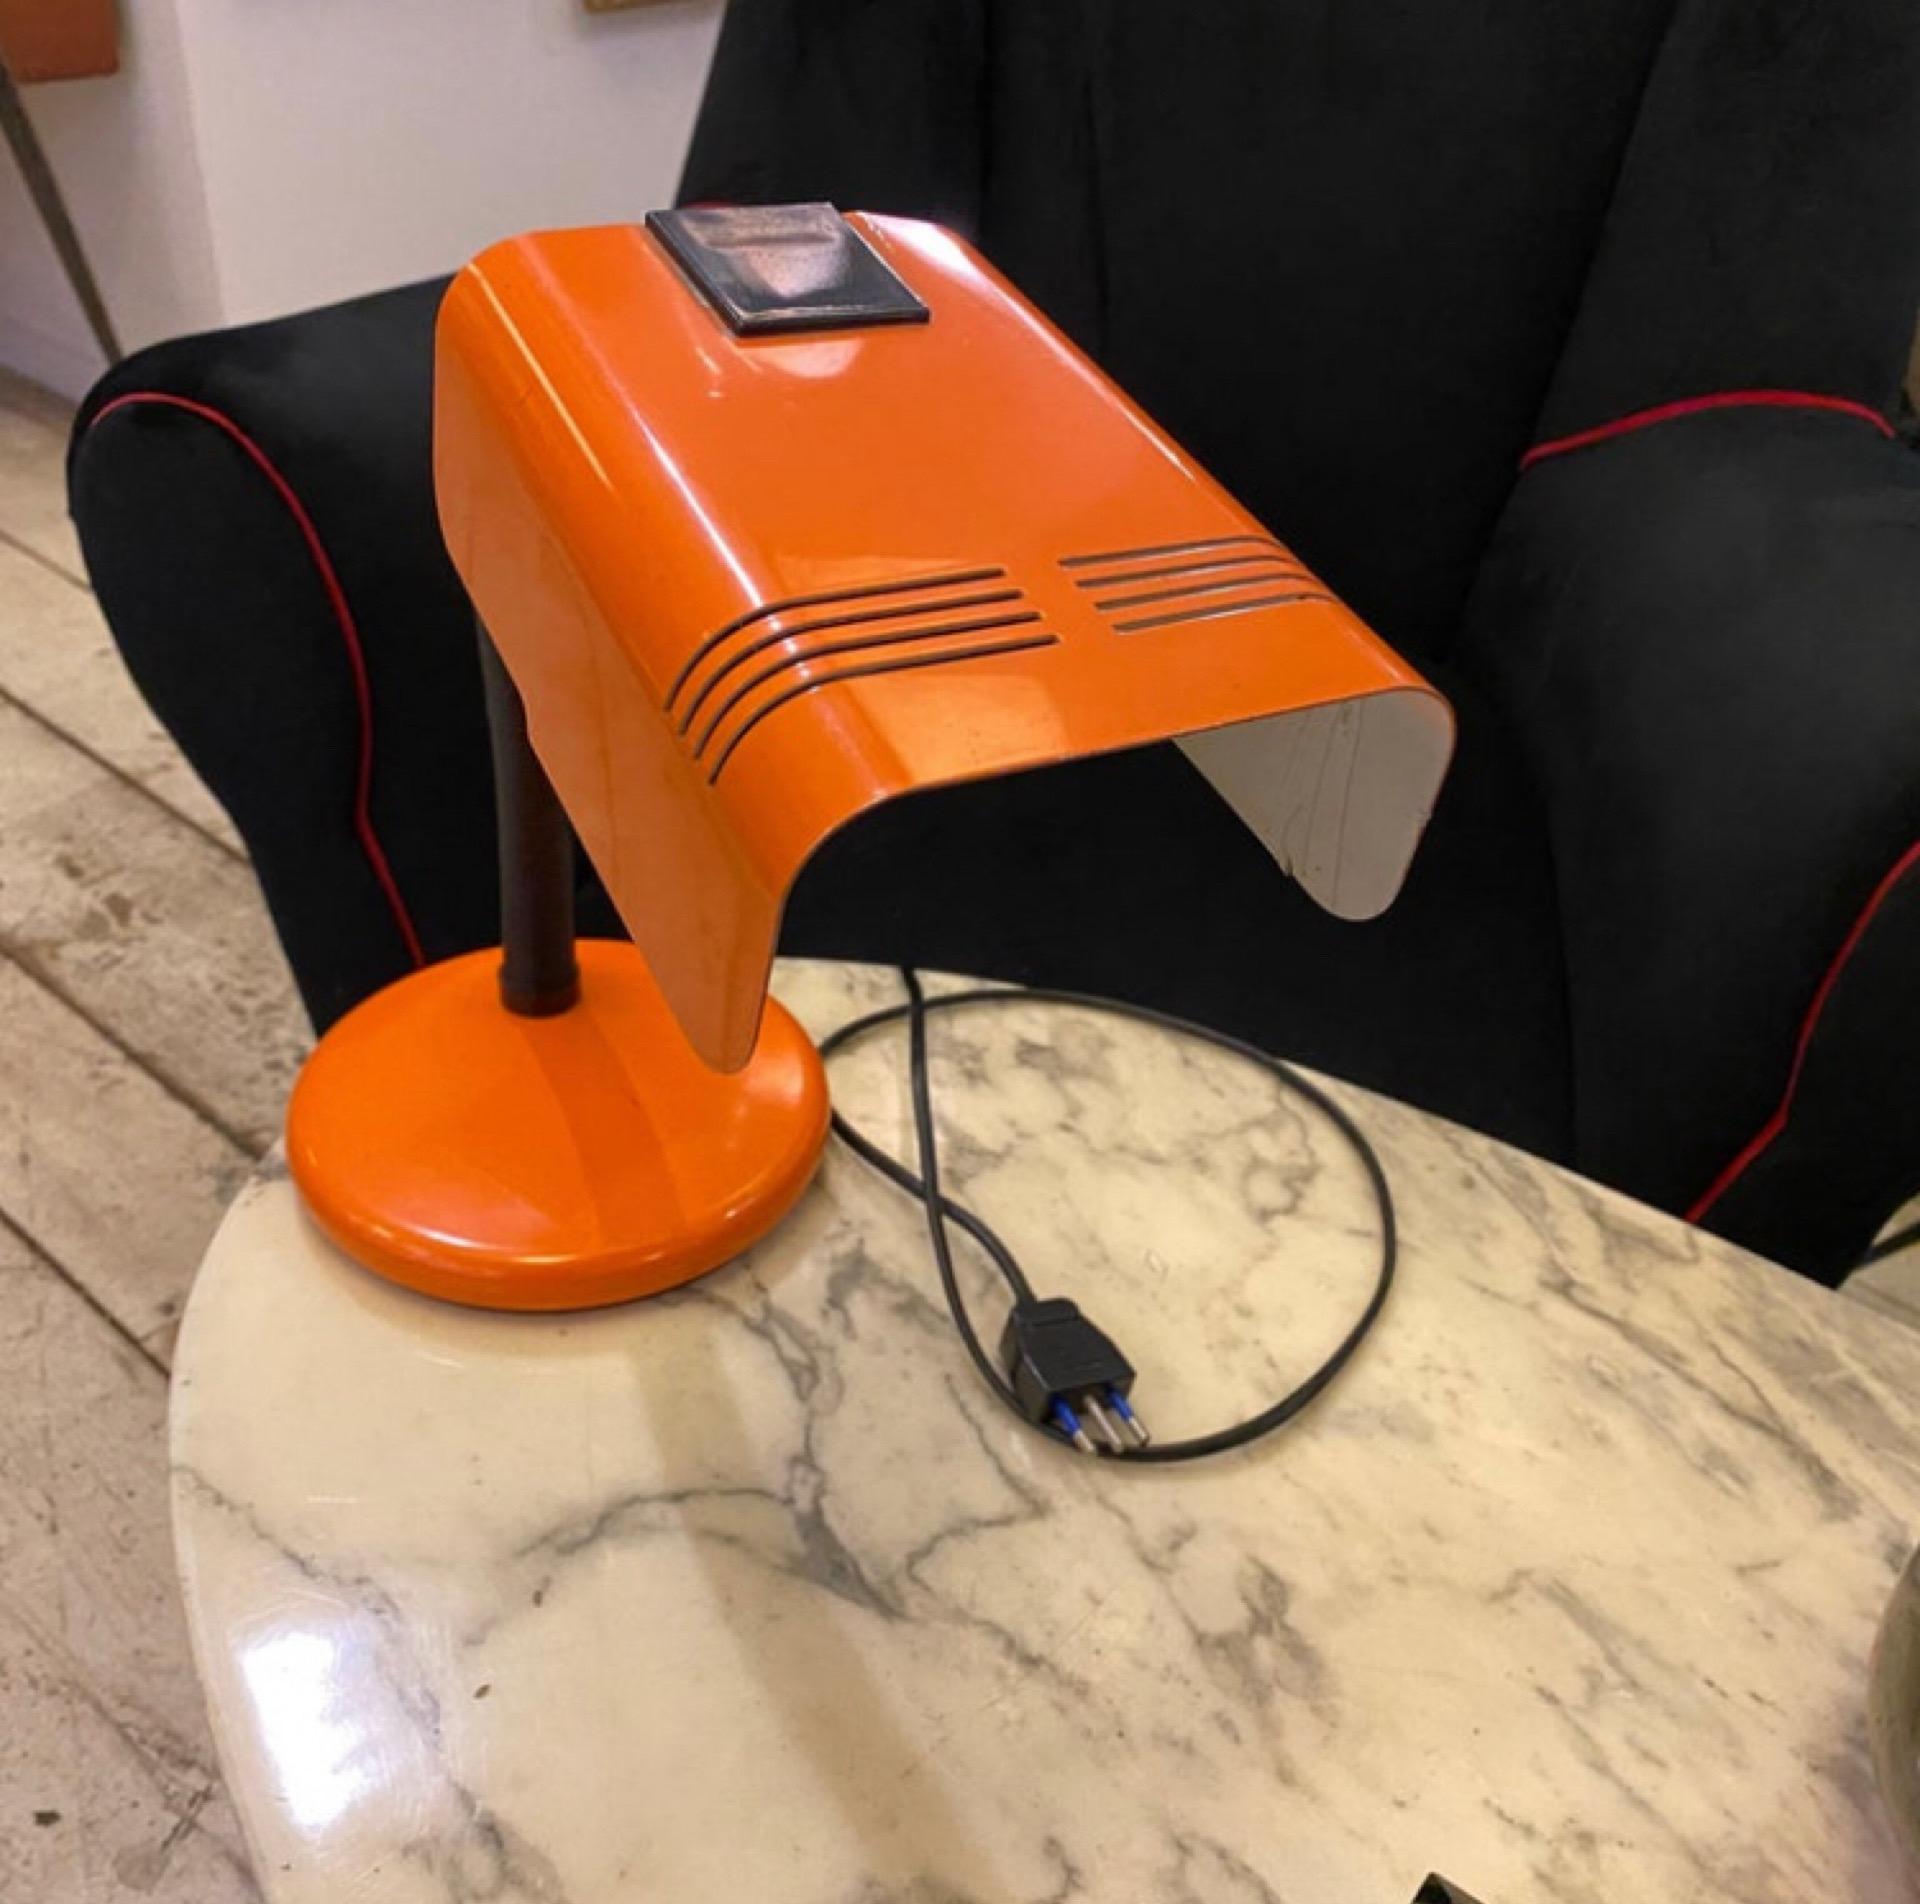 Ère spatiale Targetti lampe de bureau italienne orange et noire de l'ère spatiale des années 1970 en vente